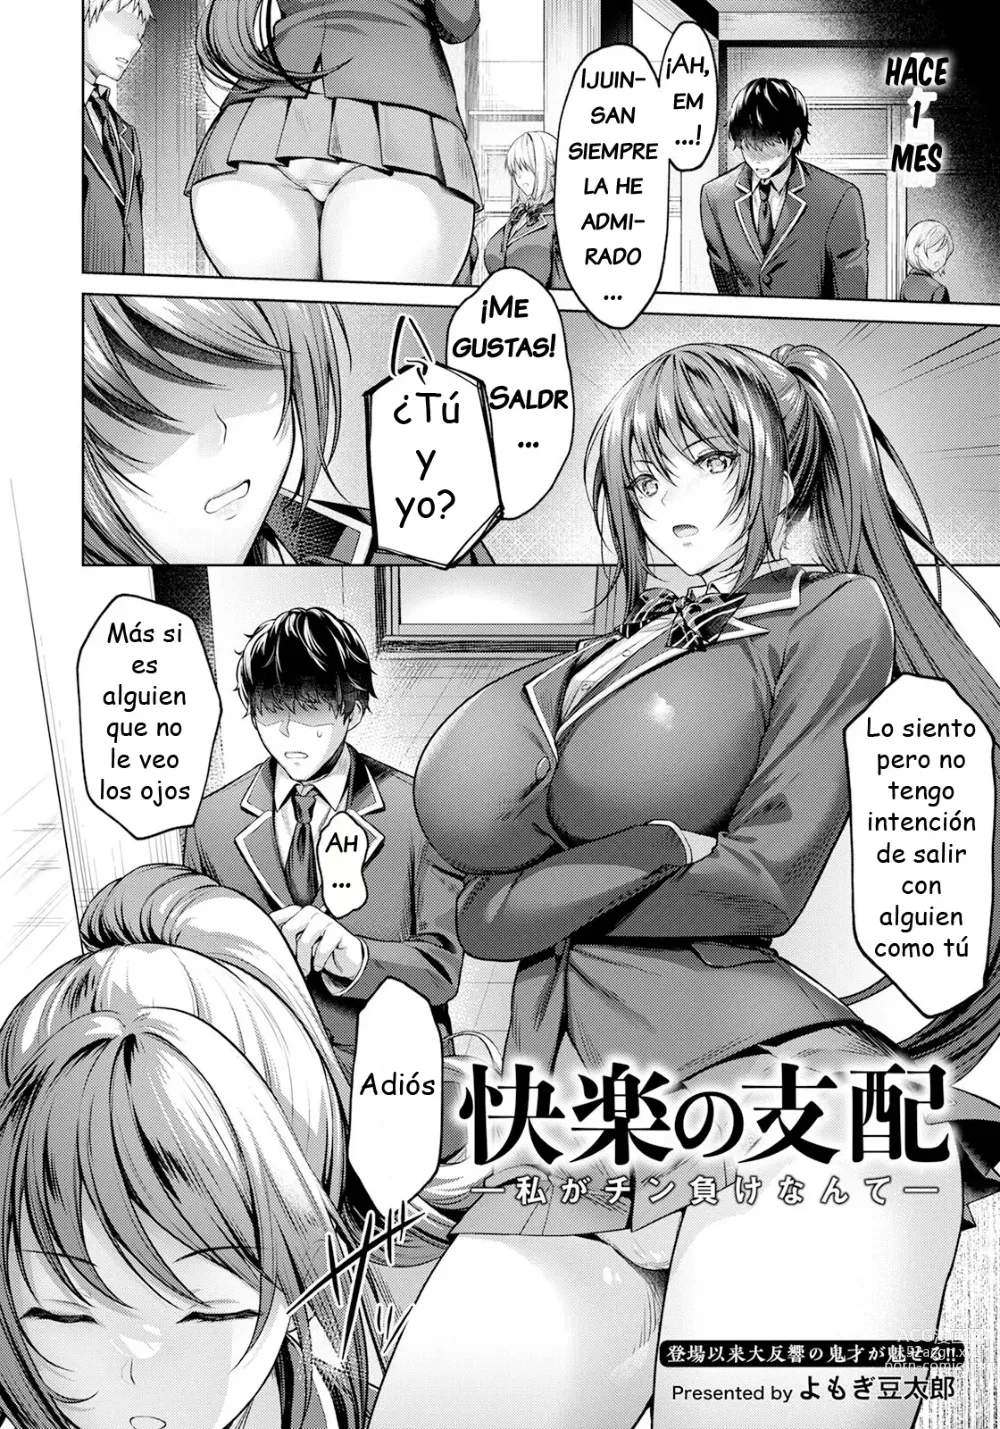 Page 2 of manga Dominación del Placer ~No puedo creer que perdí~